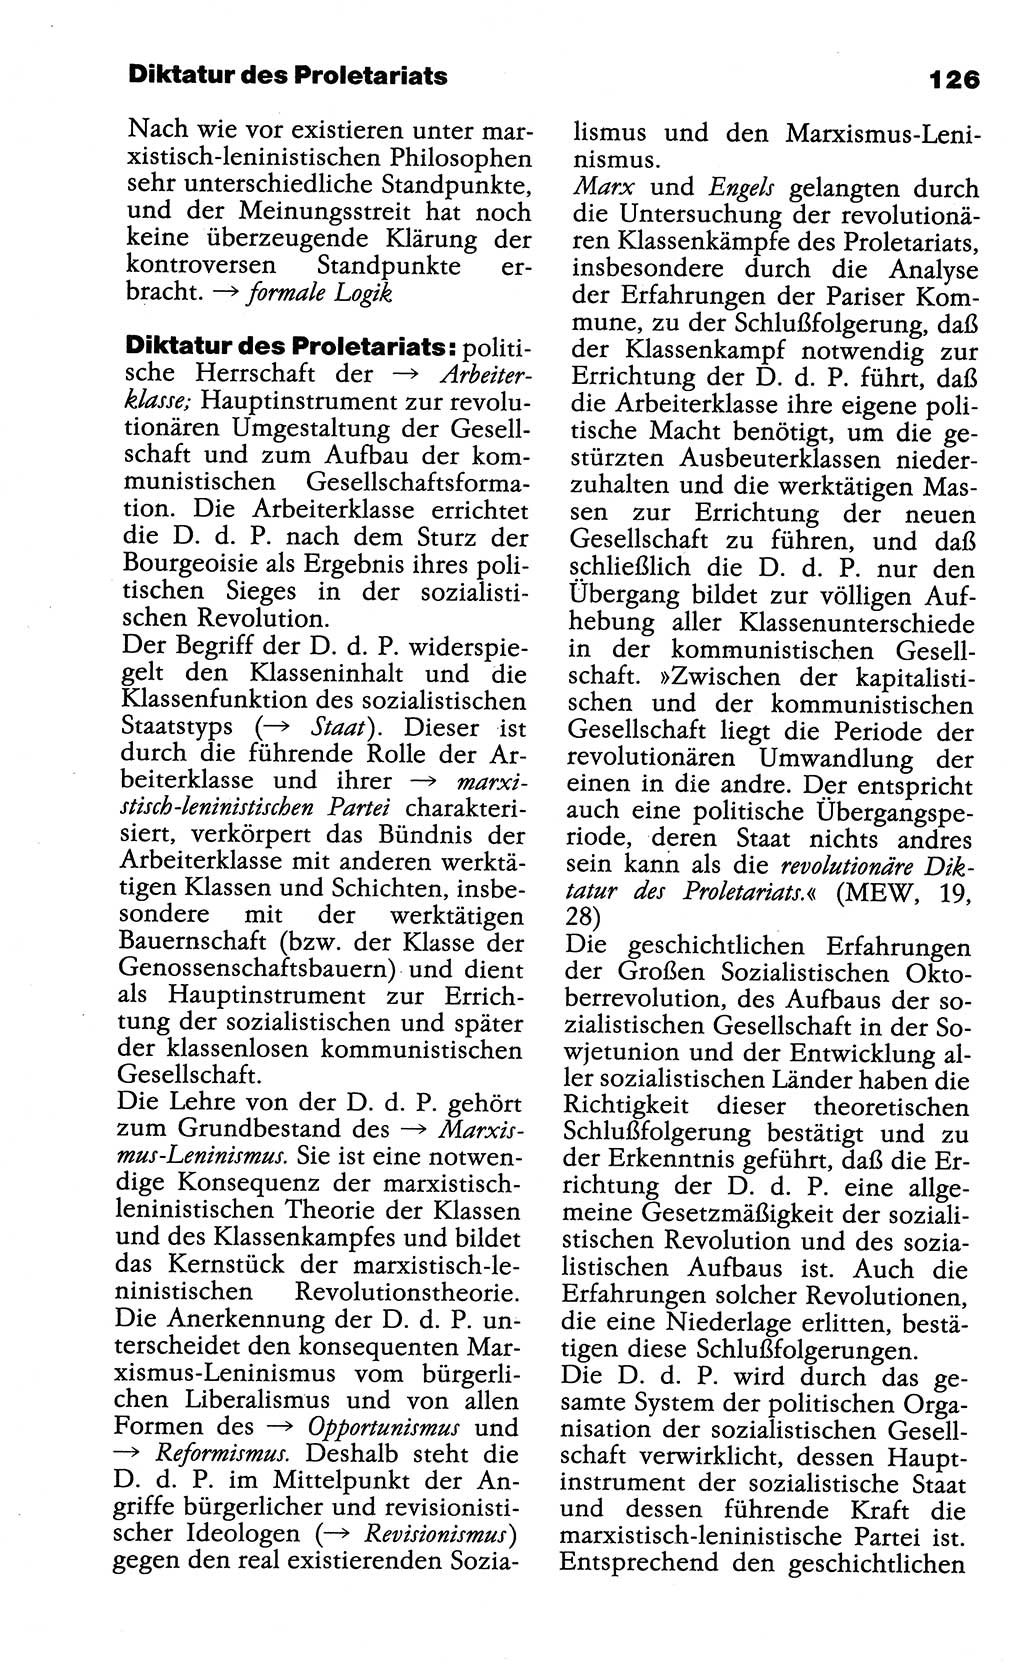 Wörterbuch der marxistisch-leninistischen Philosophie [Deutsche Demokratische Republik (DDR)] 1985, Seite 126 (Wb. ML Phil. DDR 1985, S. 126)